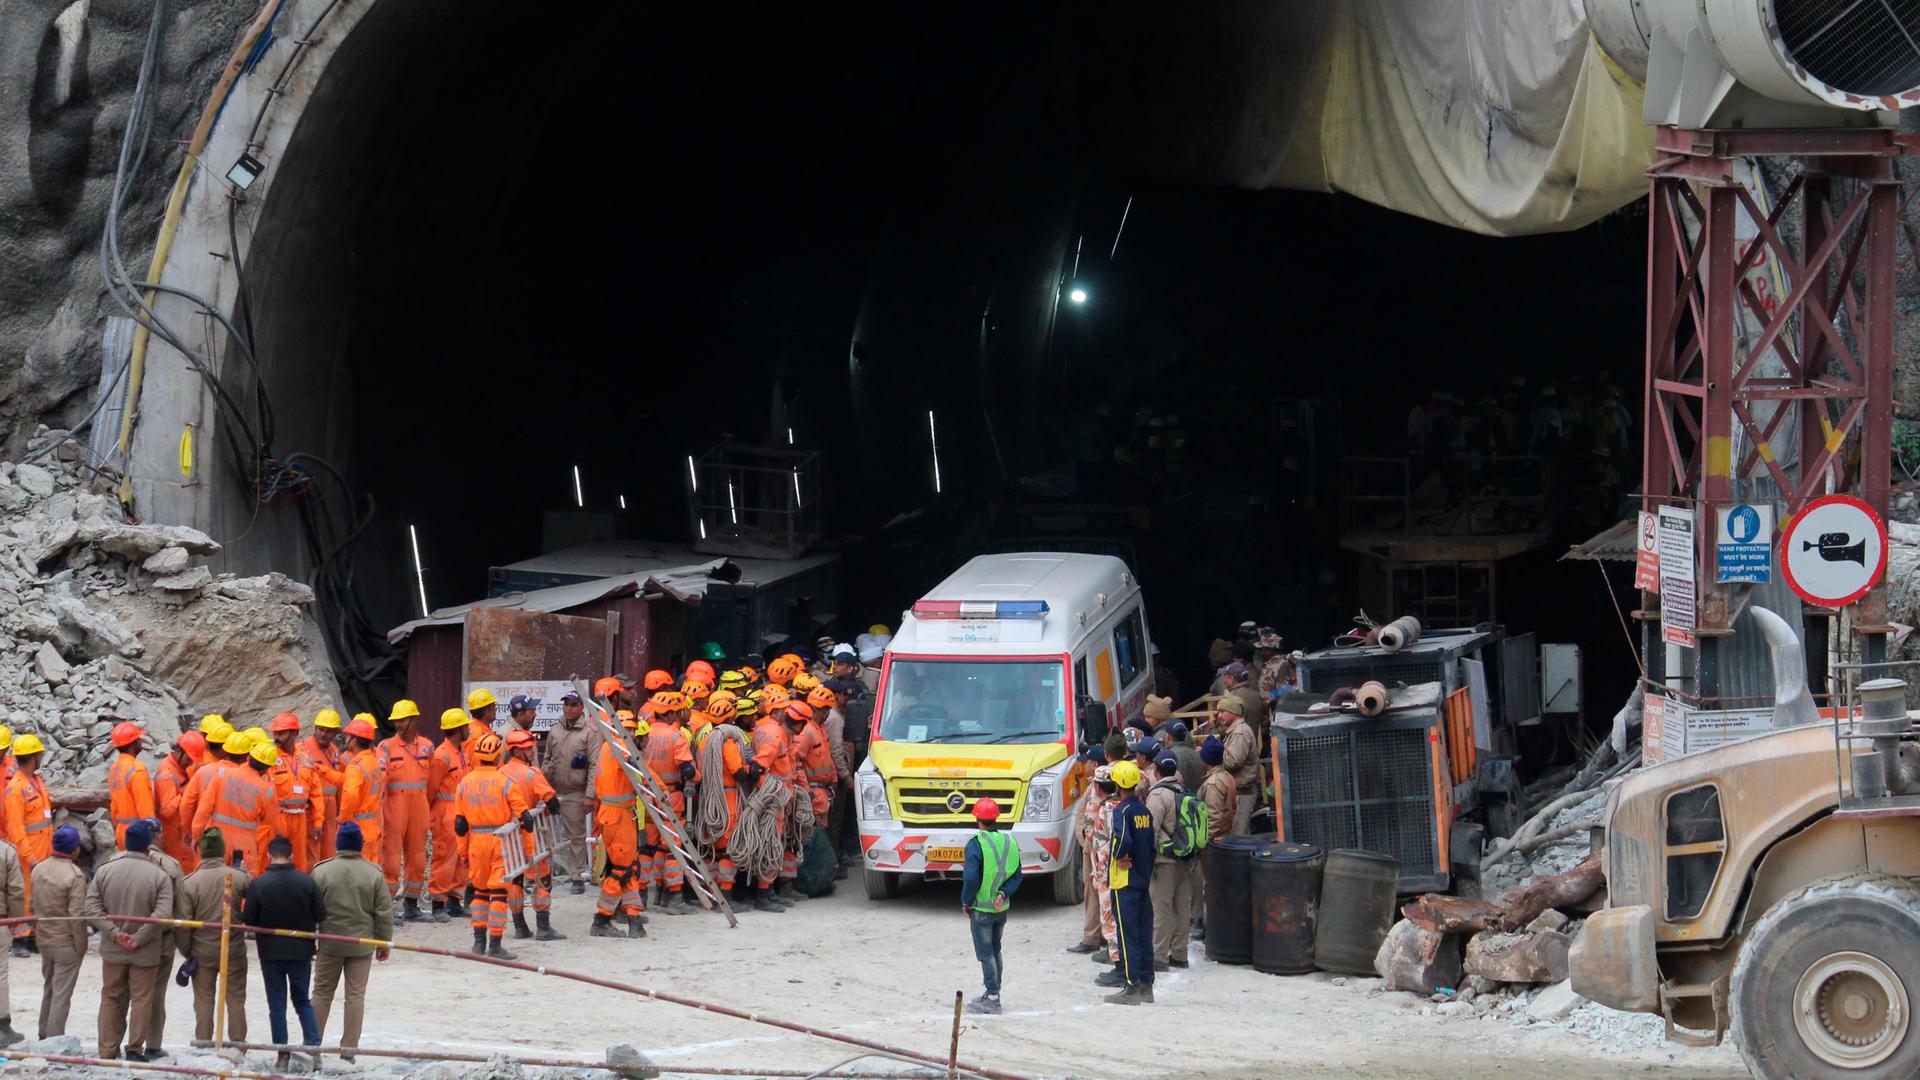 Vor dem riesigen Tunnel stehen viele Rettungs-Kräfte in orangefarbenen Anzügen und das Rettungs-Fahrzeug.